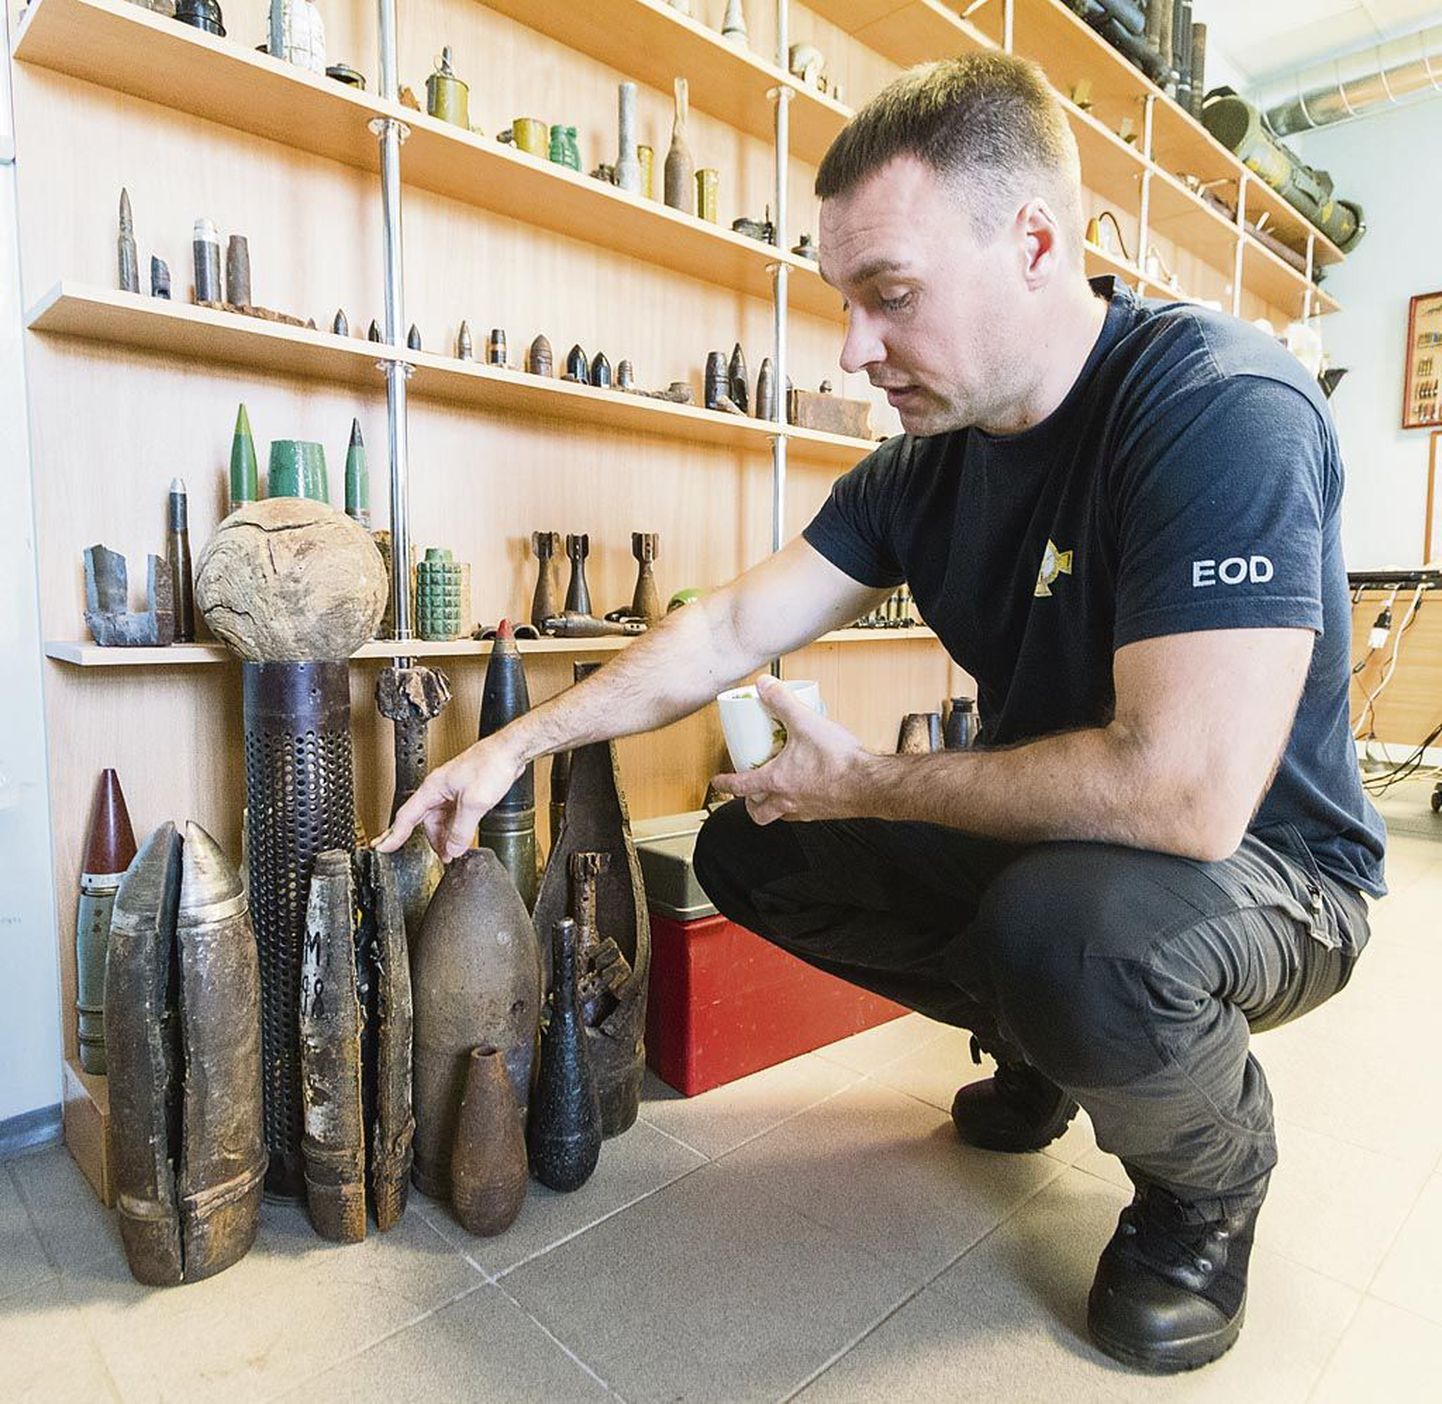 Lääne-Eesti pommigrupi juhataja Janek Sõnum näitas demineerijate õppeklassis Eestist leitud mürske ja miinipilduja miine, mis erinevad nii suuruse kui välimuse poolest. Ohtlikud on sellegipoolest kõik.